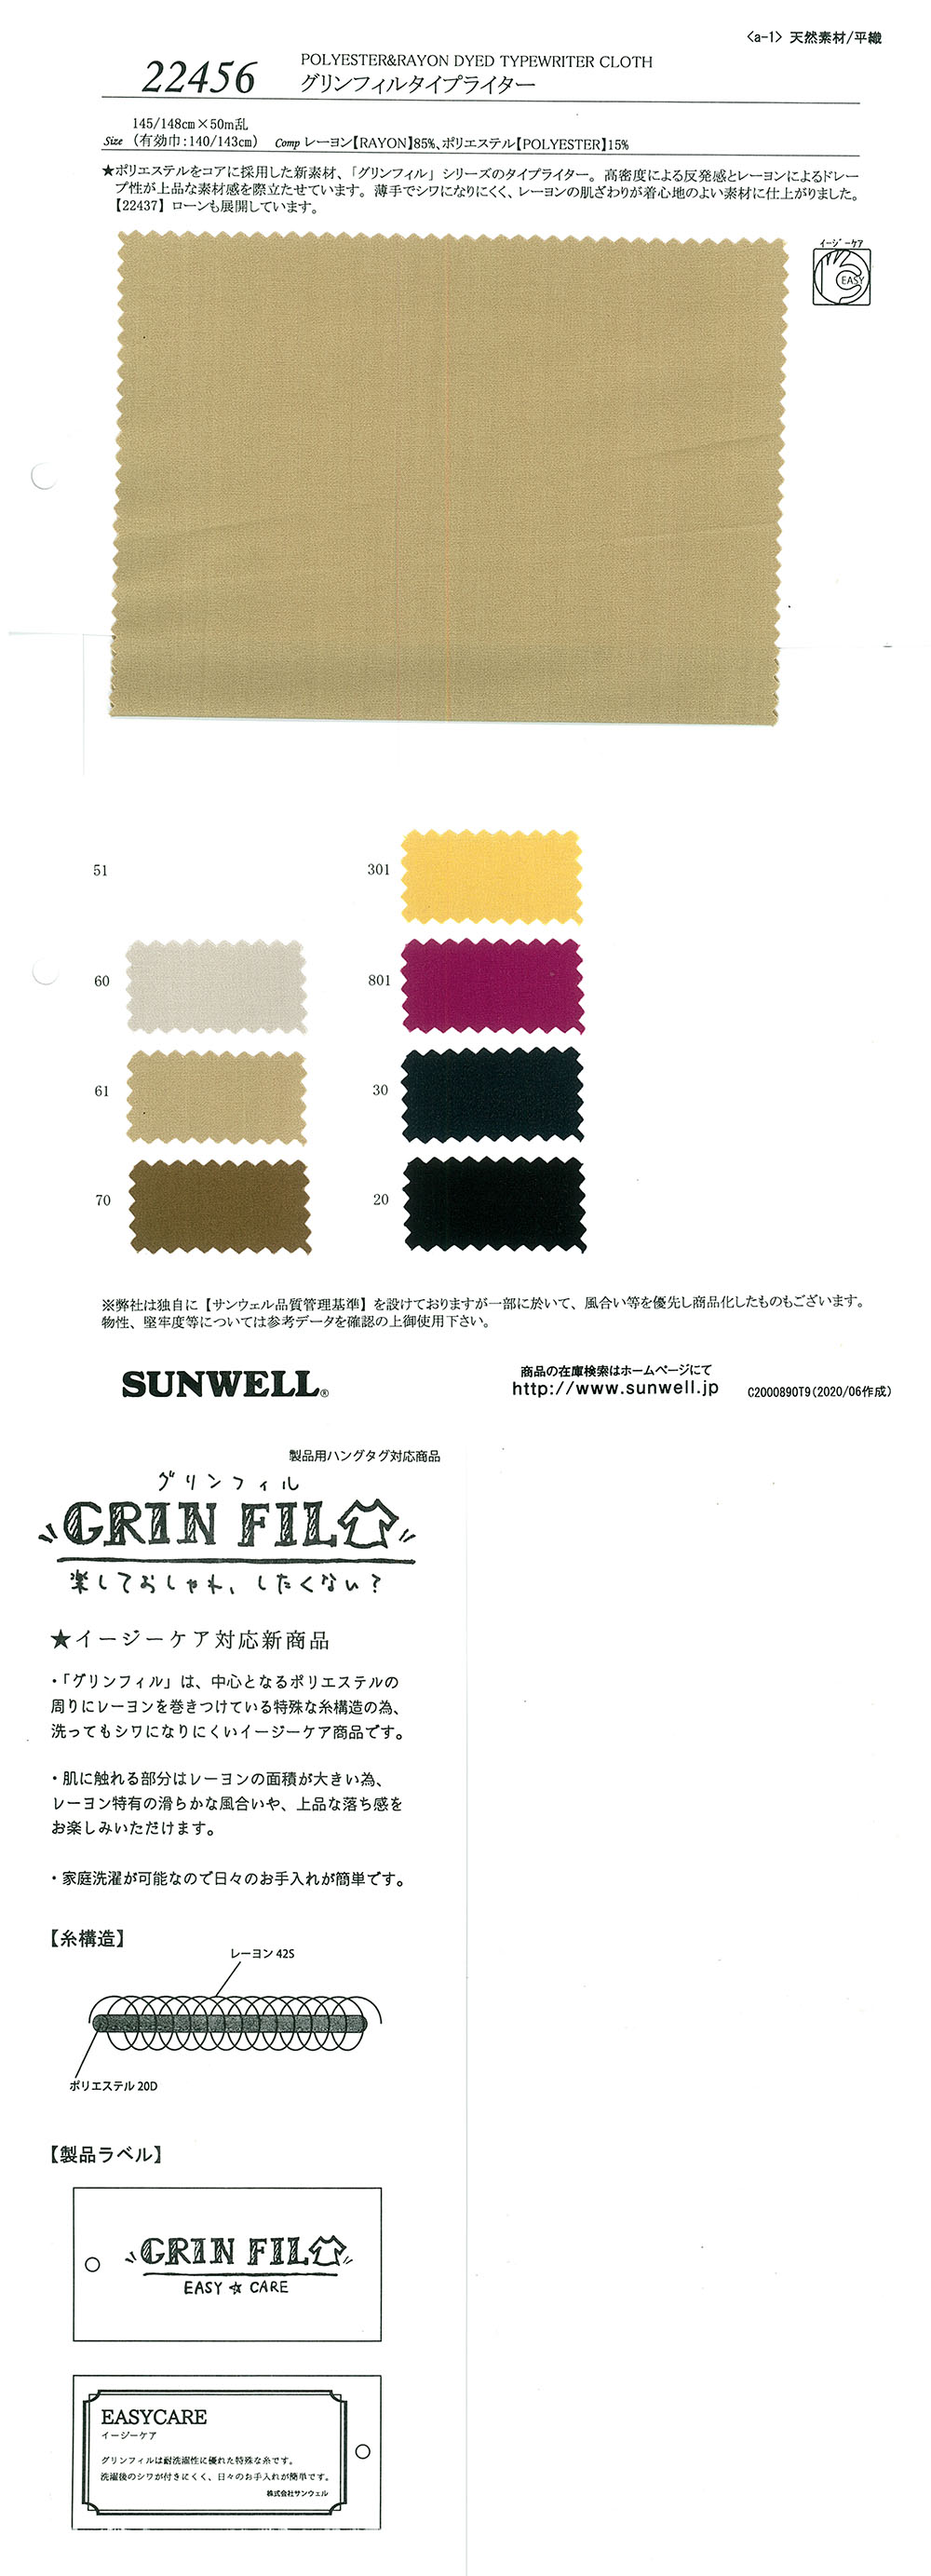 22456 Pano De Máquina De Escrever GrinFil[Têxtil / Tecido] SUNWELL